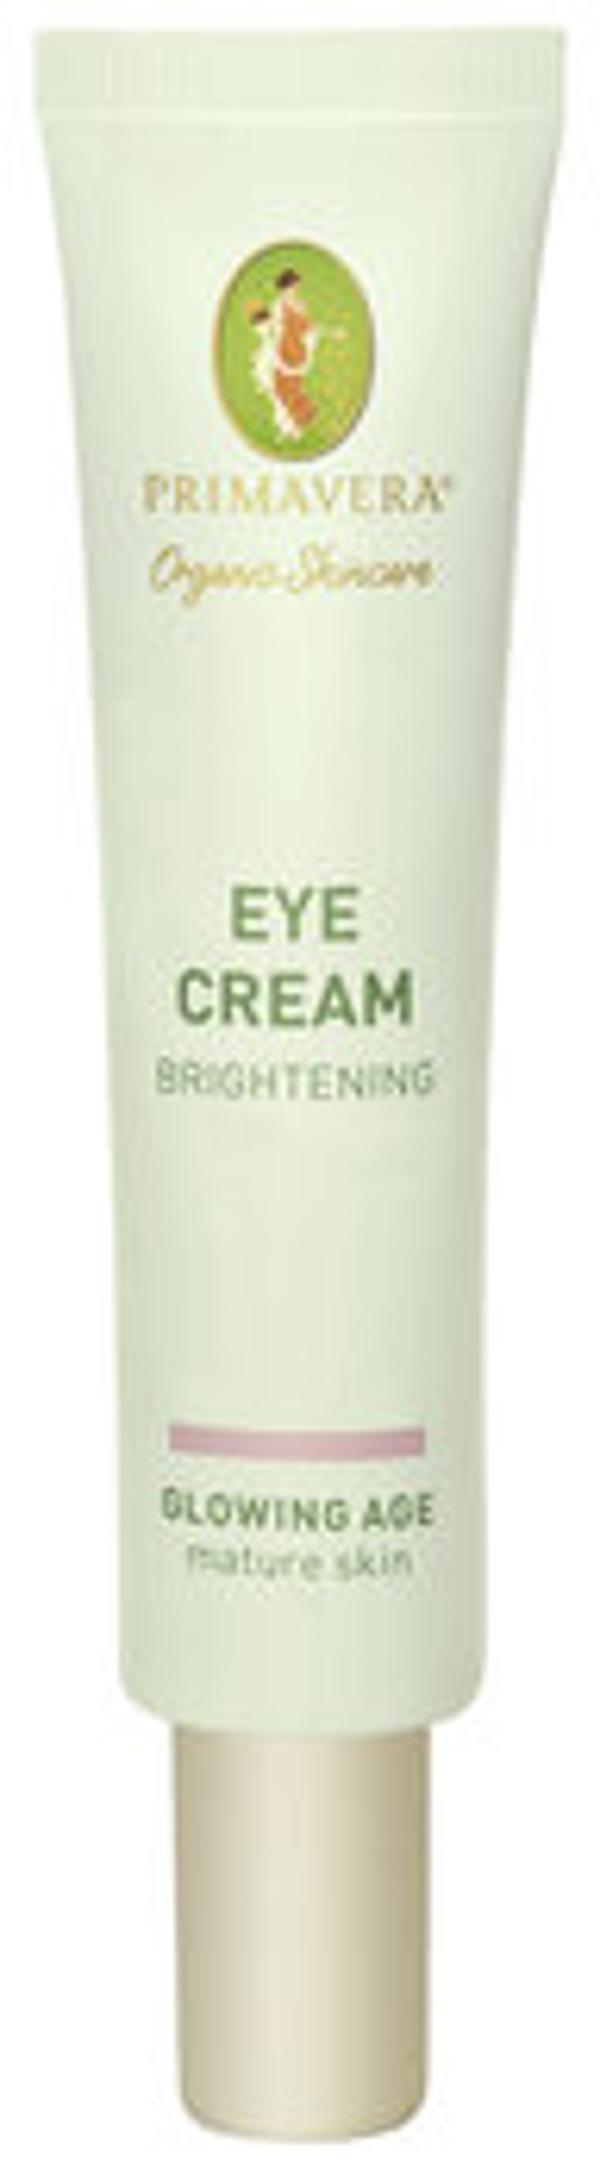 Produktfoto zu Eye Cream Brightening, 15 ml